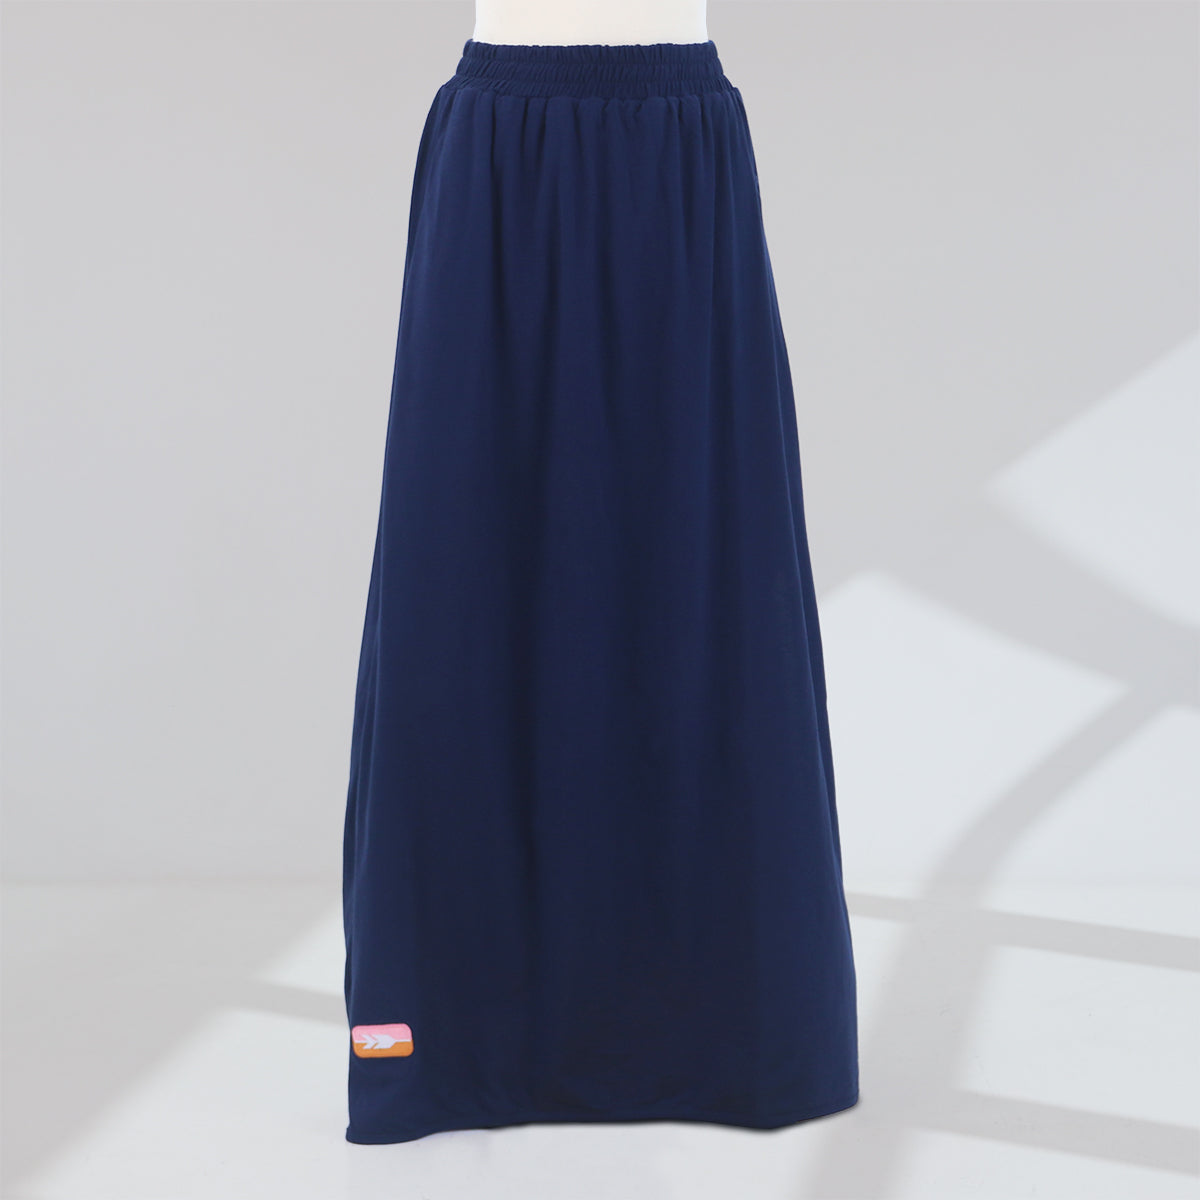 Huri Skirt - Navy